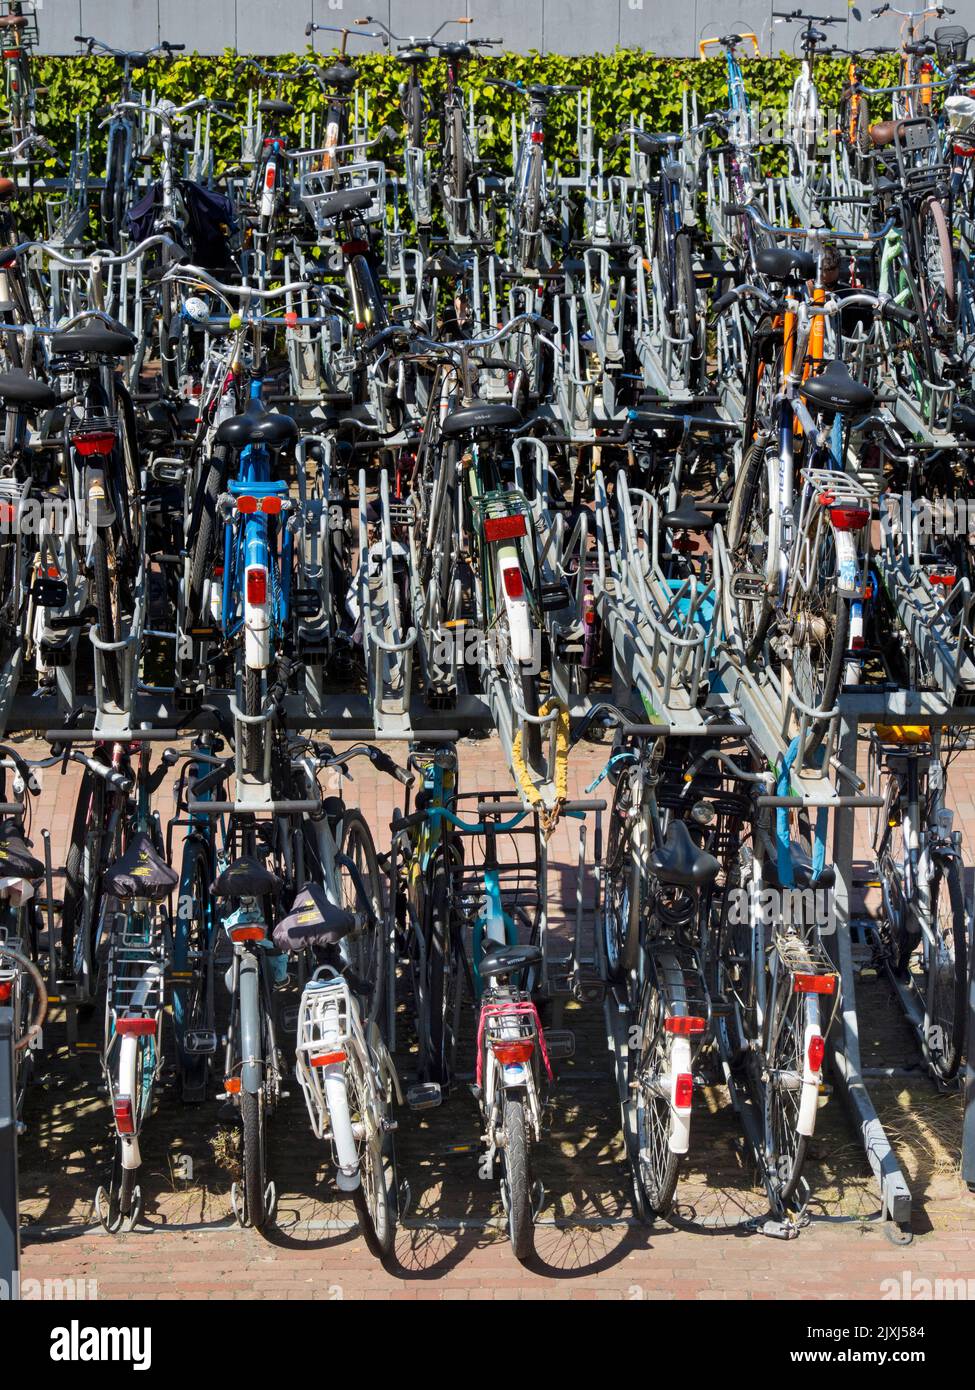 En los Países Bajos prevalece una cultura de la bicicleta. En Rotterdam, al igual que en aall las zonas urbanas del país, dominan las bicicletas y los tranvías. Pero yo a veces w Foto de stock